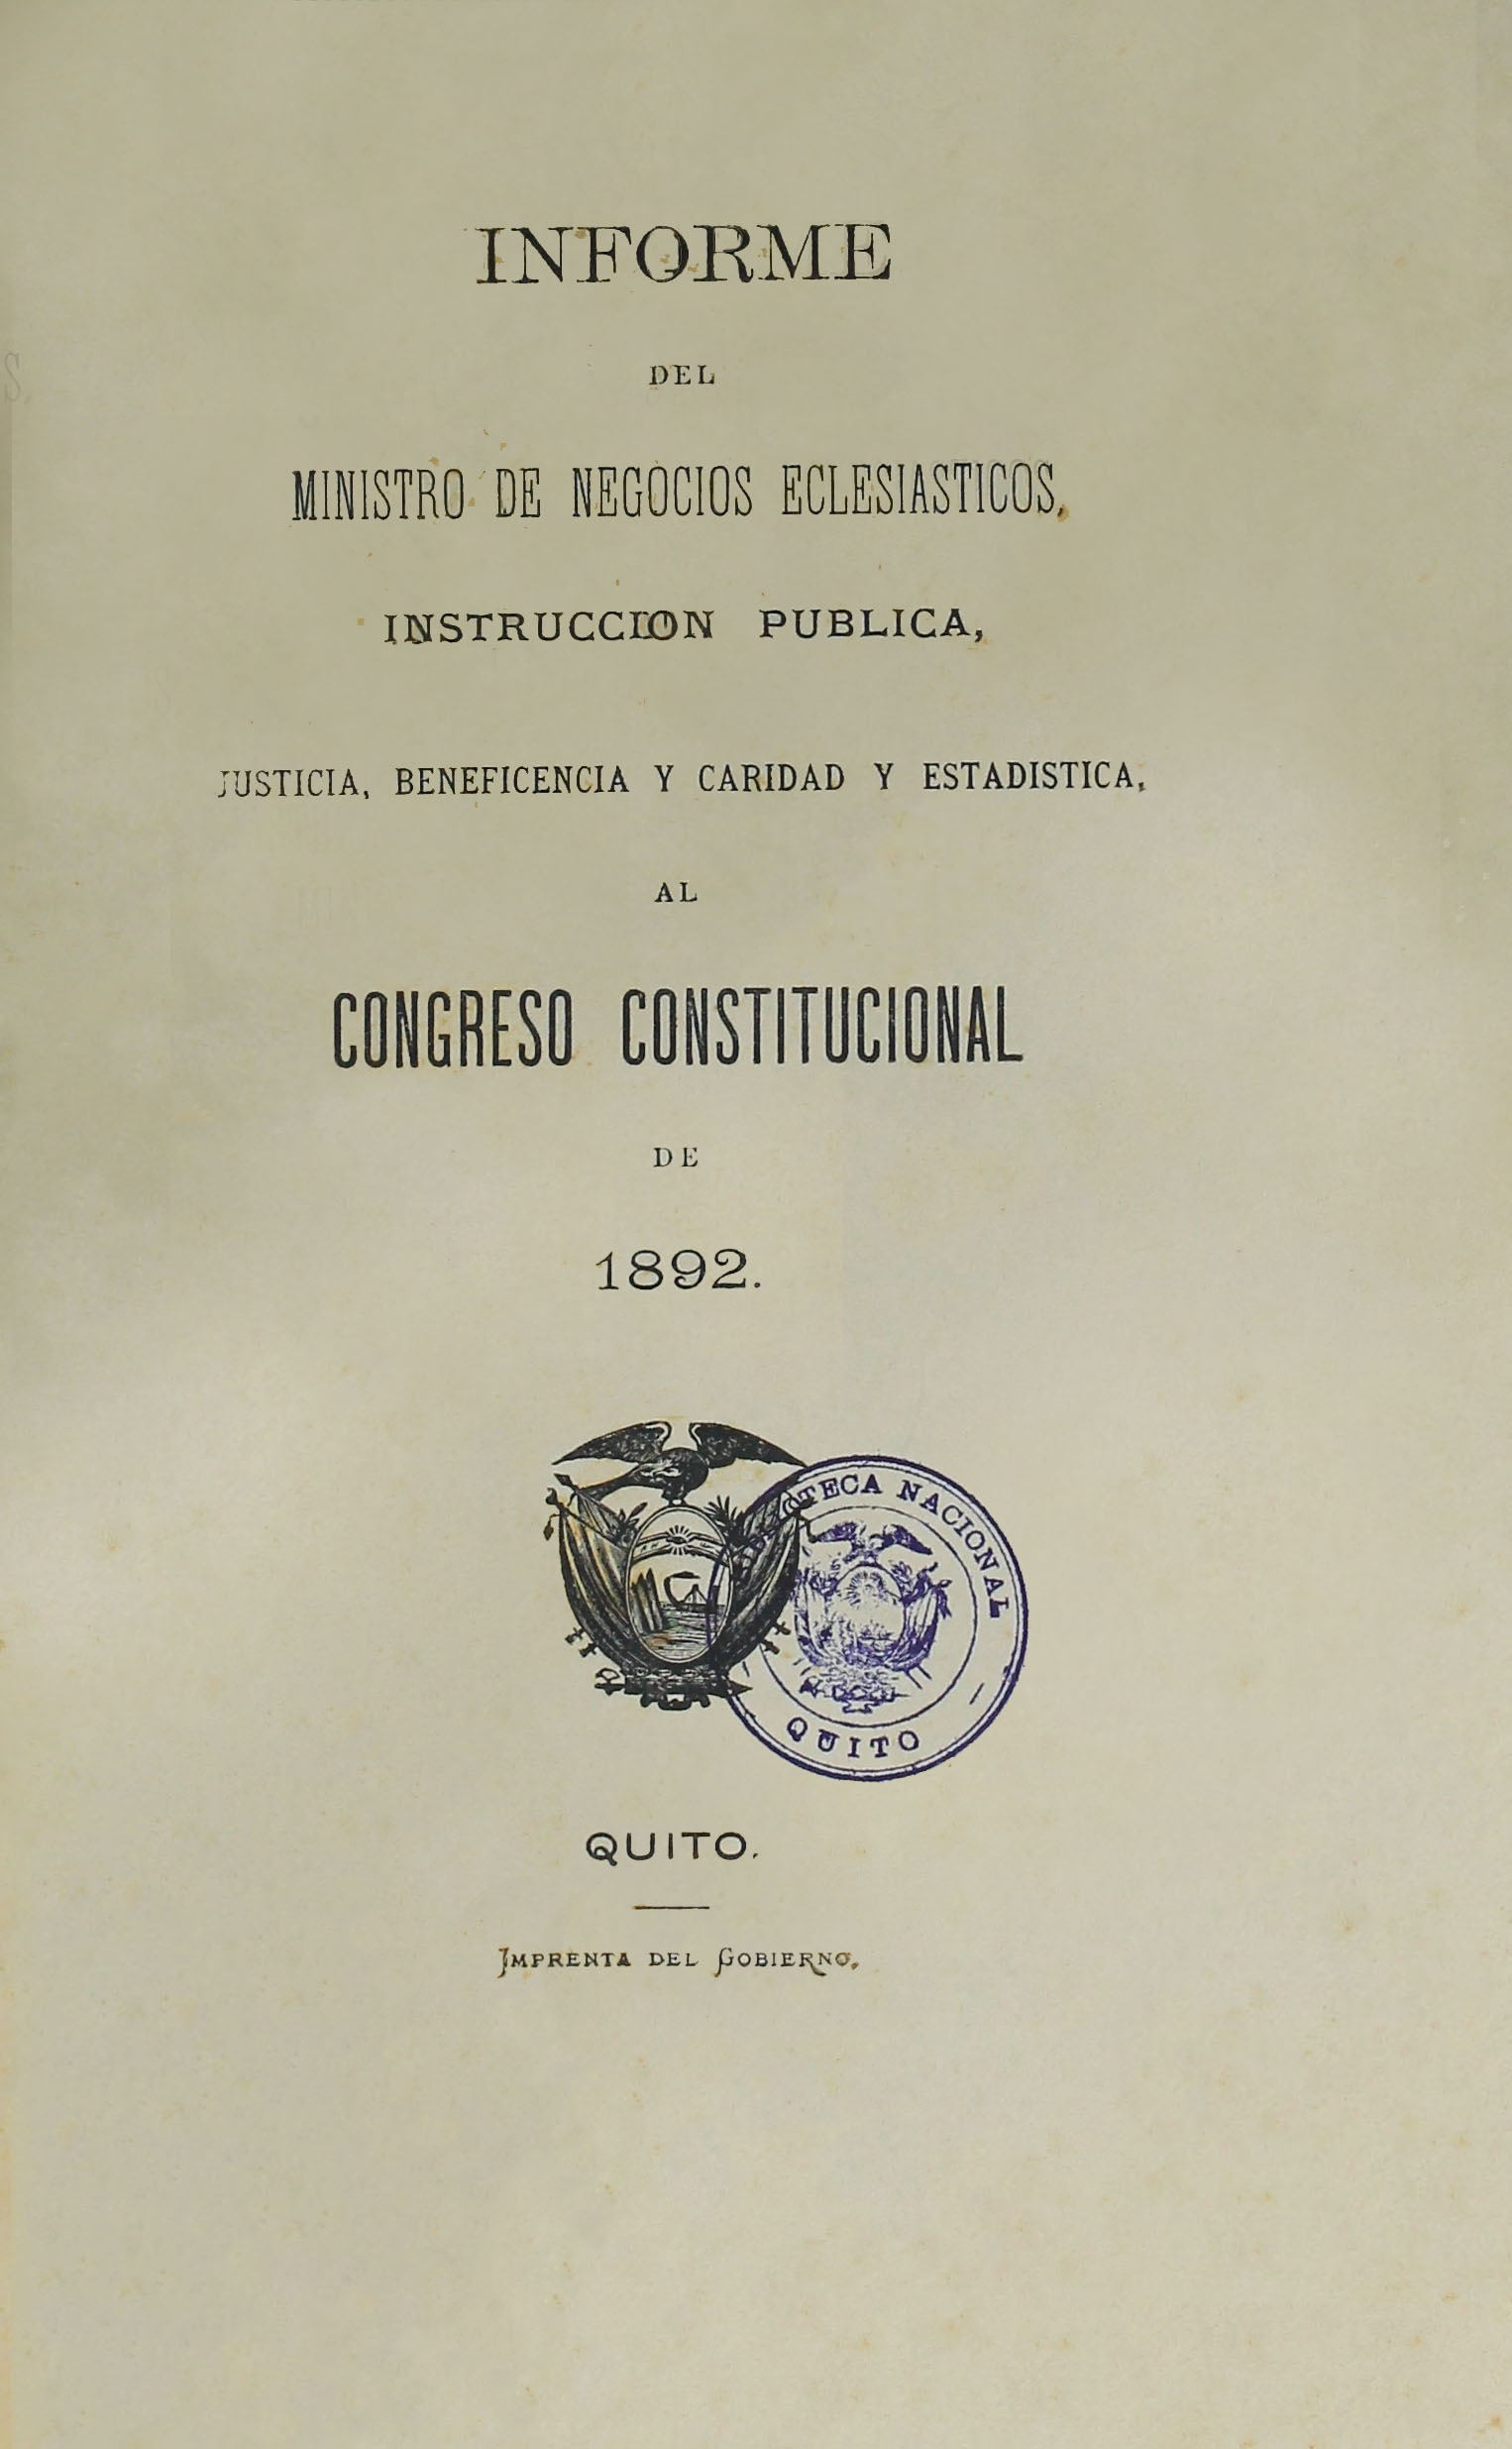 Informe del Ministro de Negocios Eclesiásticos, Instrucción Pública, Justicia, Beneficencia y Caridad y Estadística, al Congreso Constitucional de 1892.